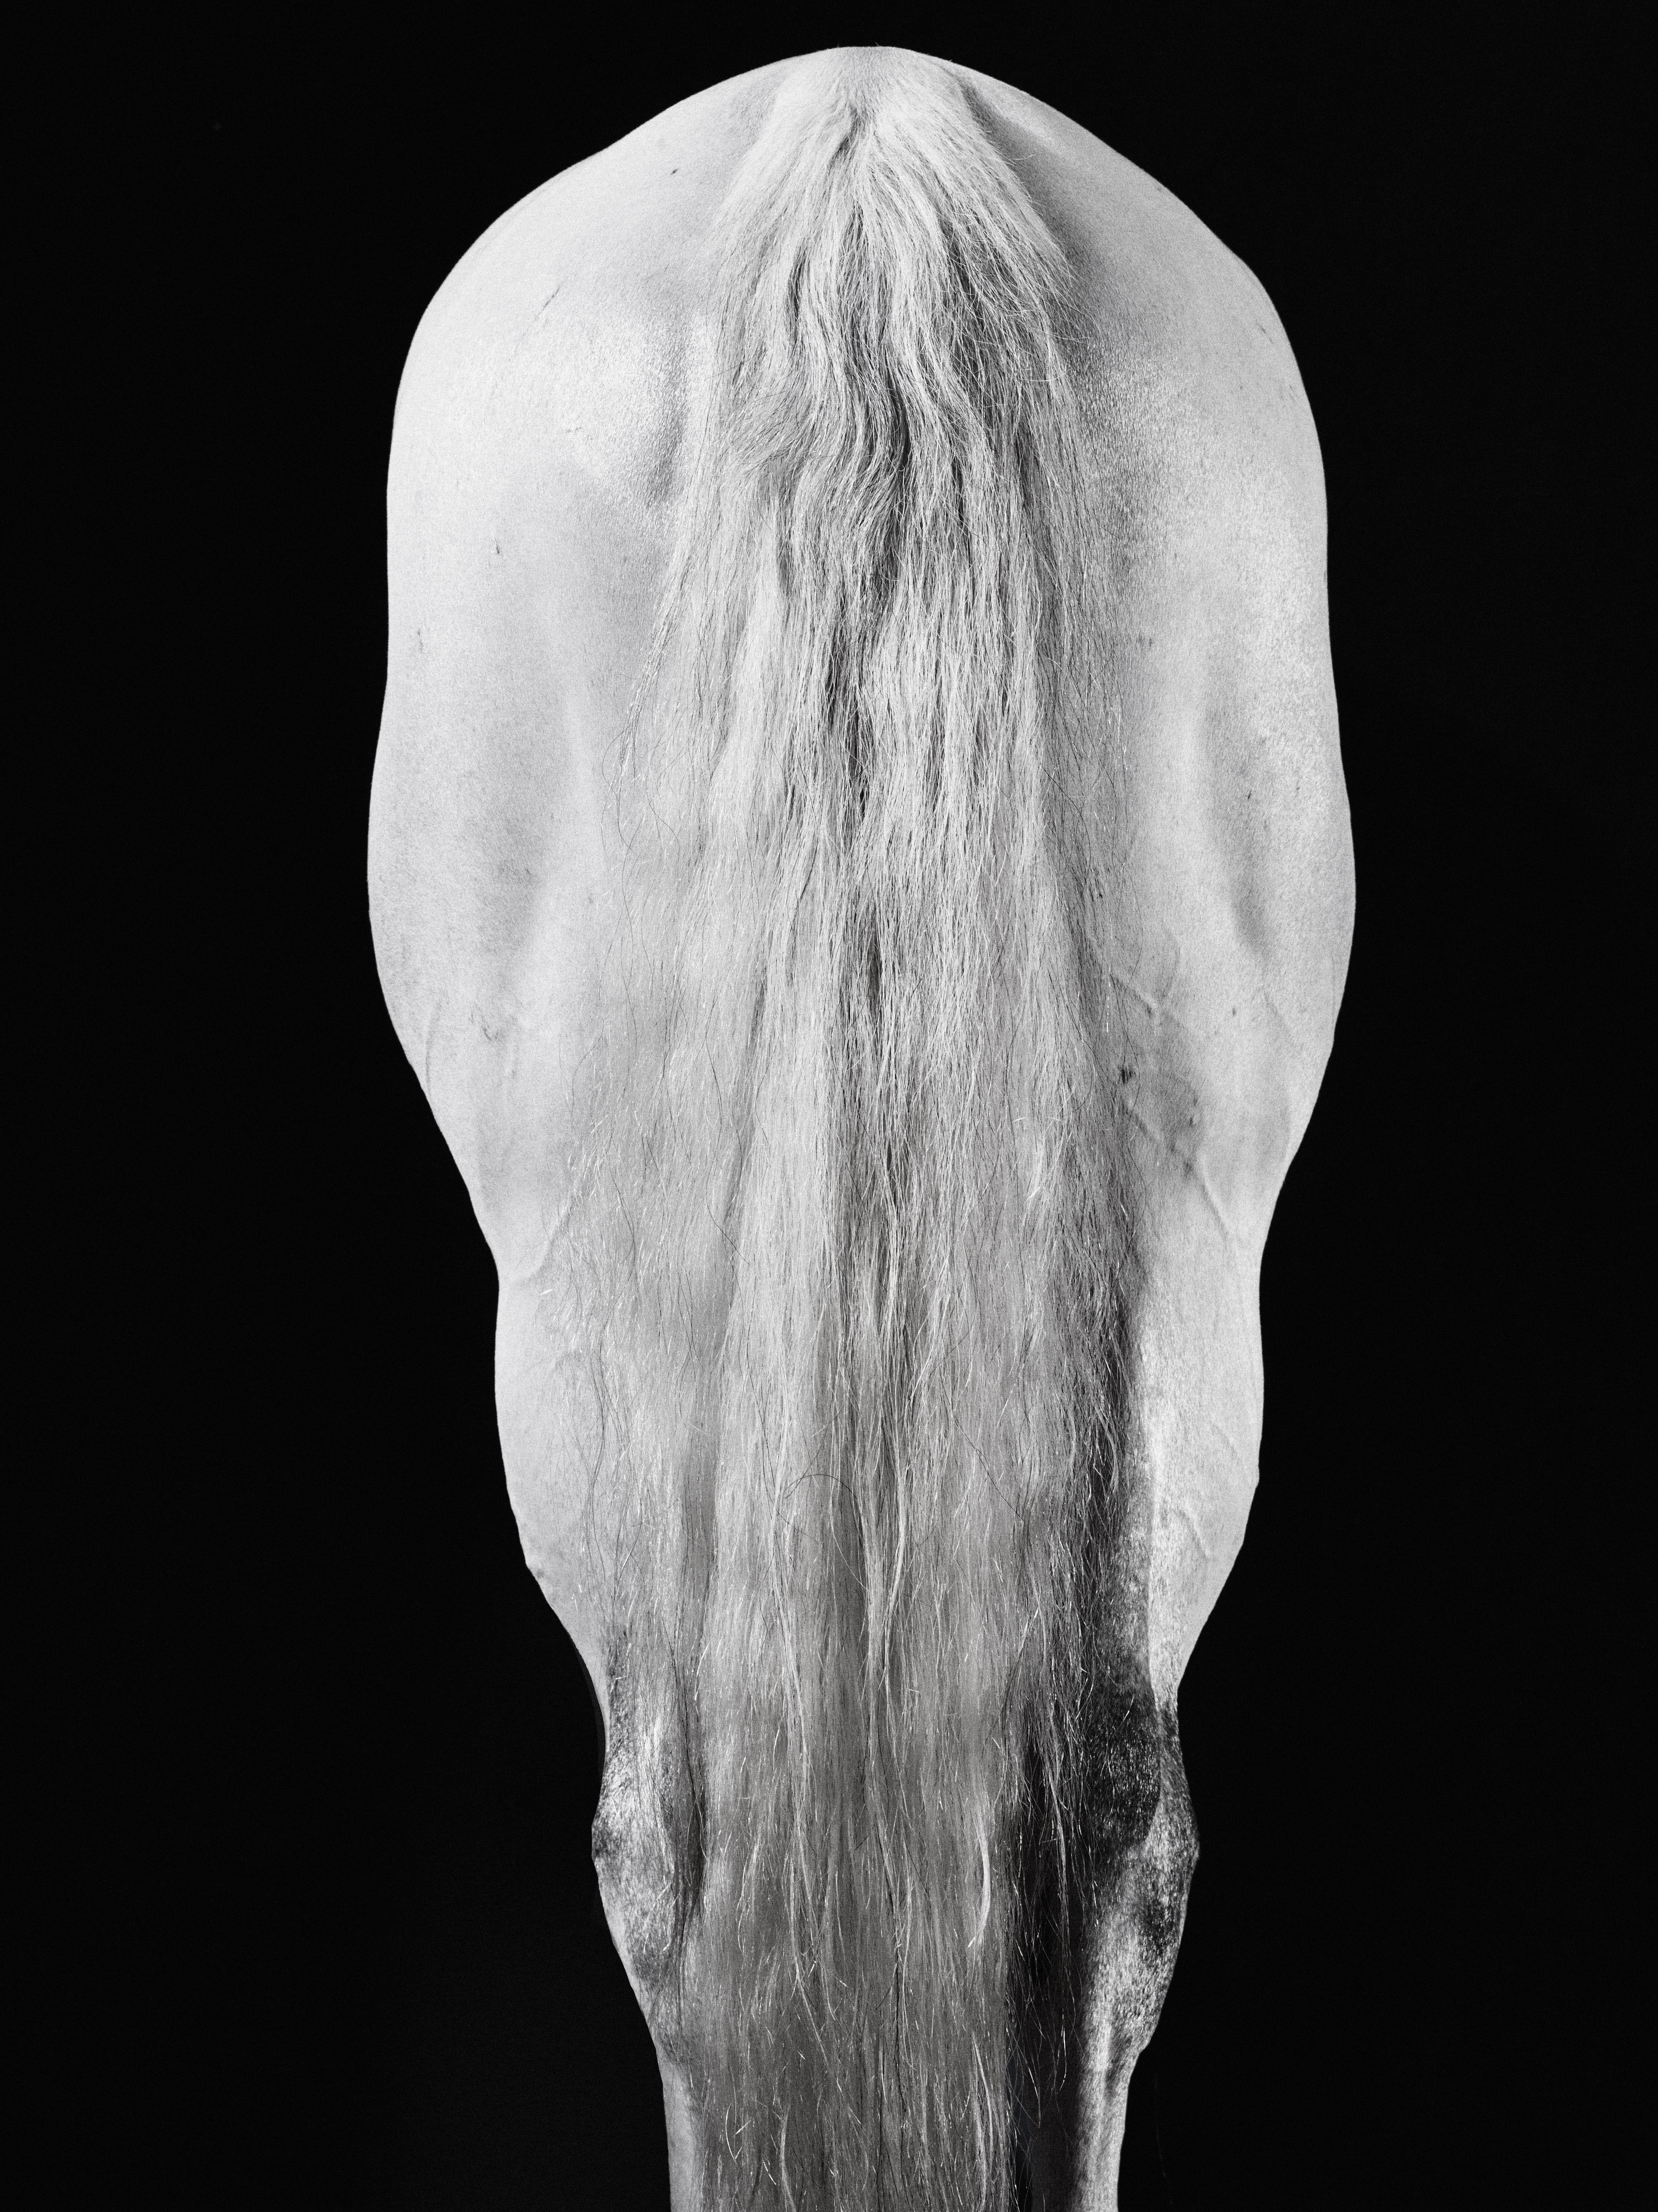 Carilot Tail – Schwarz-Weiß-Porträt eines Pferdes in limitierter Auflage 2015 – Photograph von Juan Lamarca